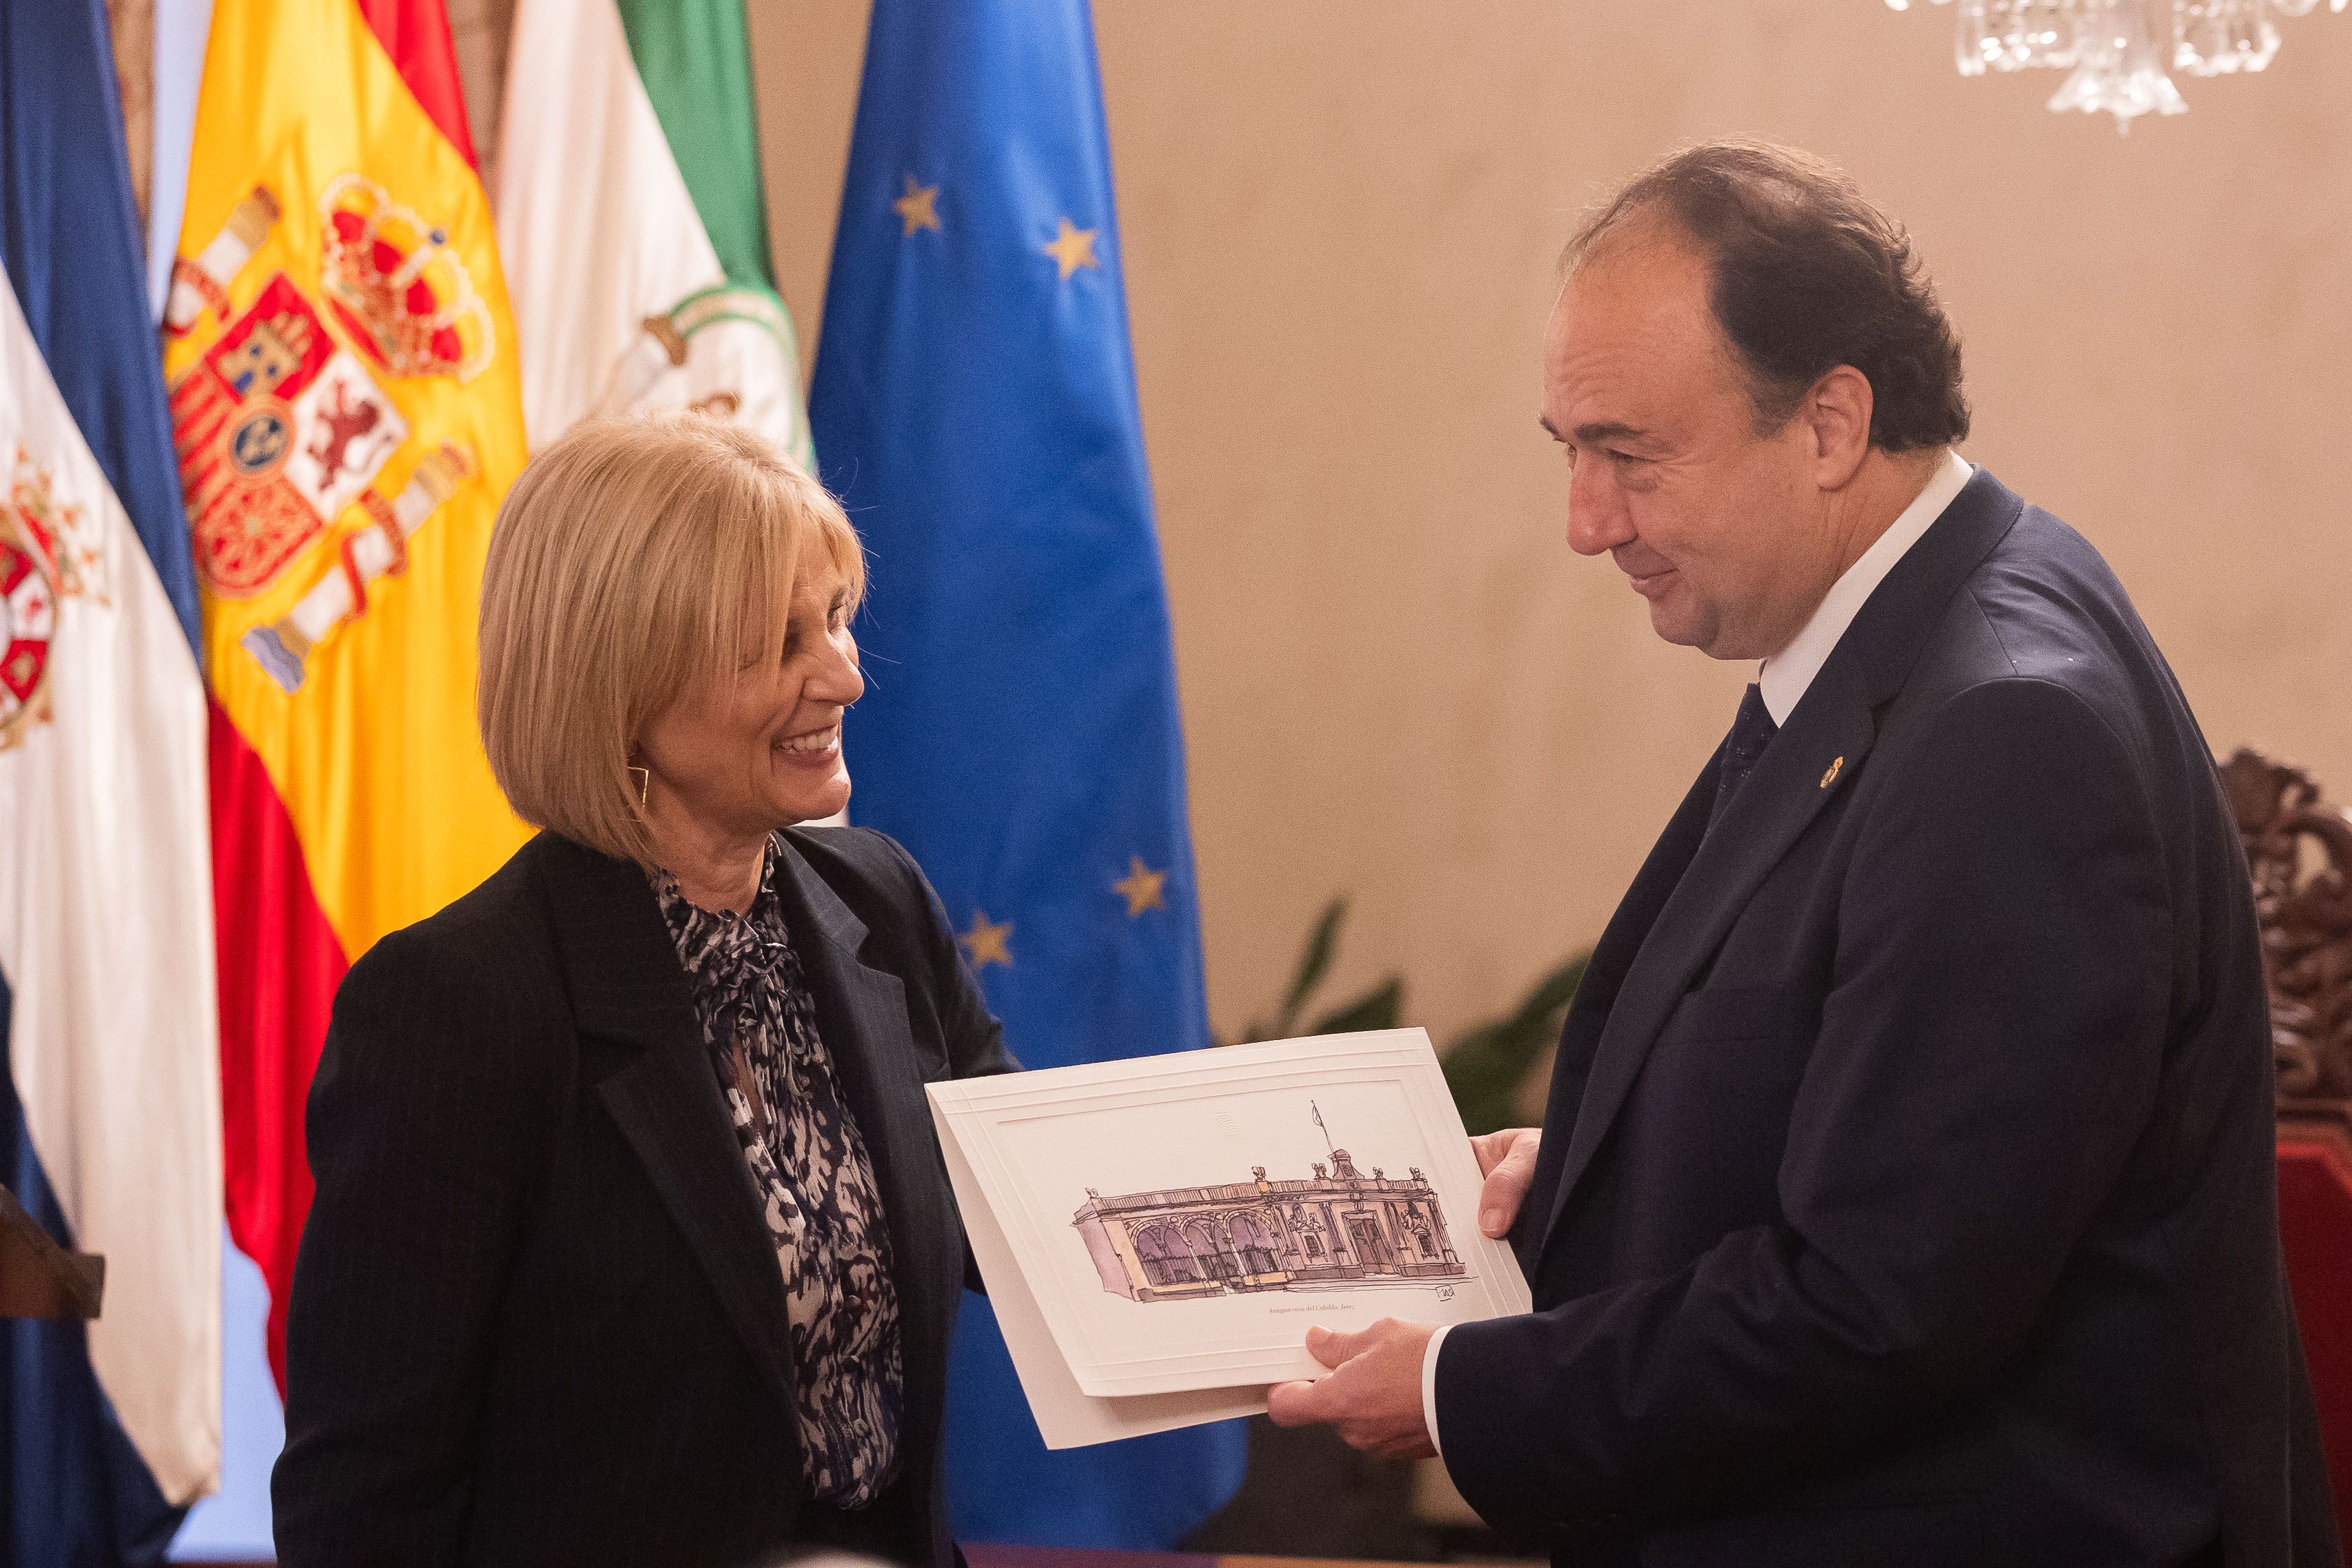 Visita de Casimiro Mantell Serrano, rector de la UCA, al Ayuntamiento de Jerez. En la imagen, recibe un obsequio de la alcaldesa María José García-Pelayo.